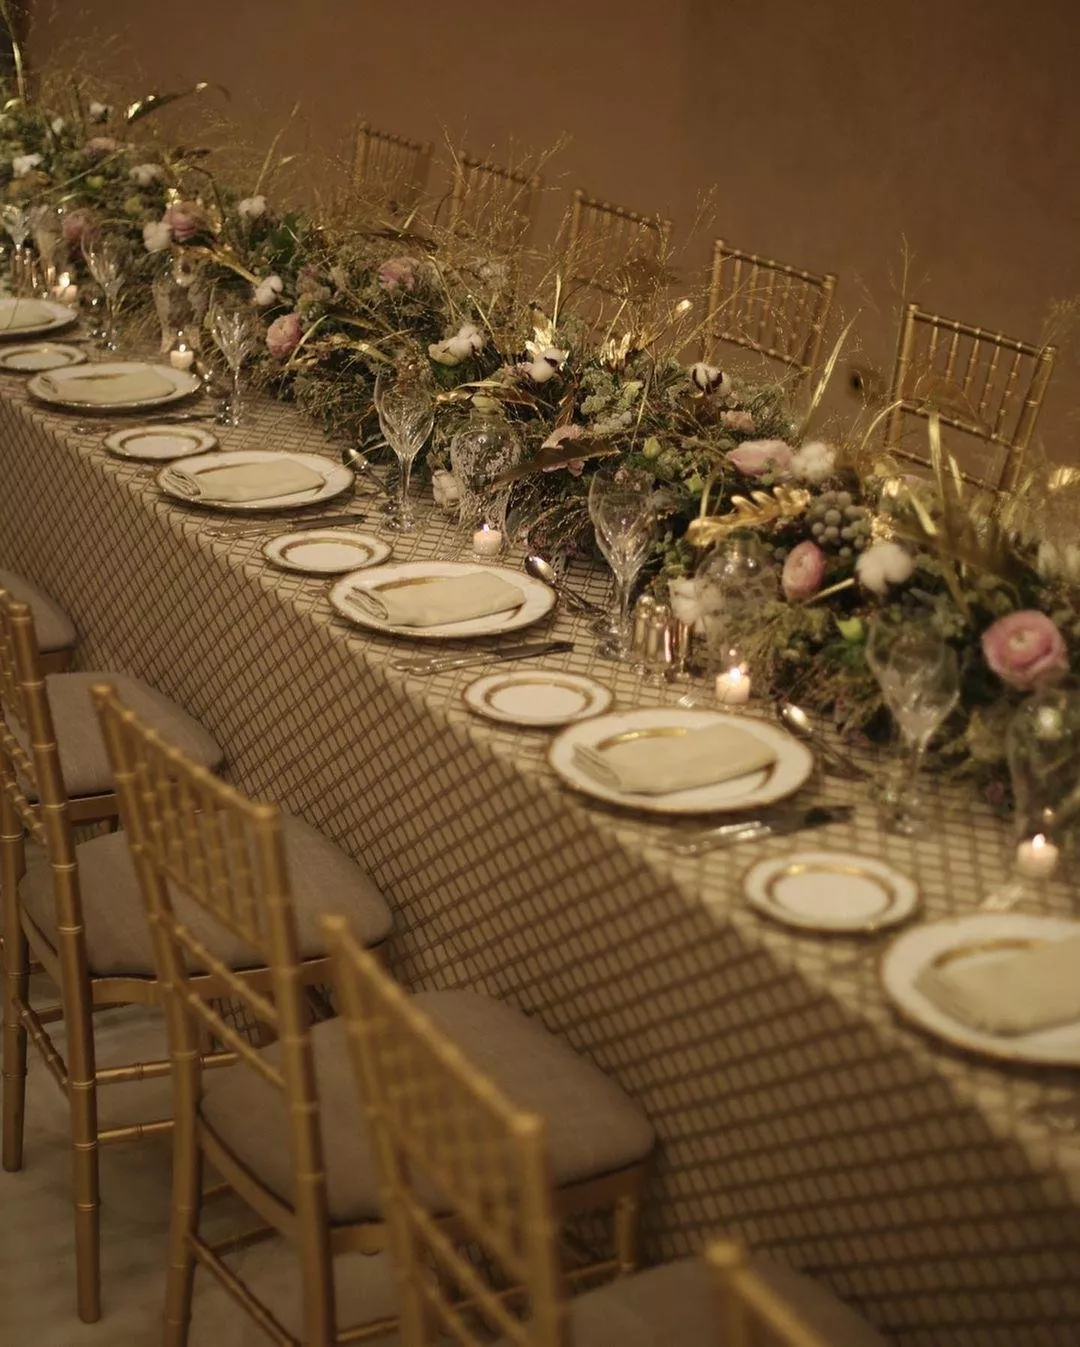 أبرز 11 منظّم حفلات أعراس وشركات في السعودية ستجعل يوم زفافكِ مميّز